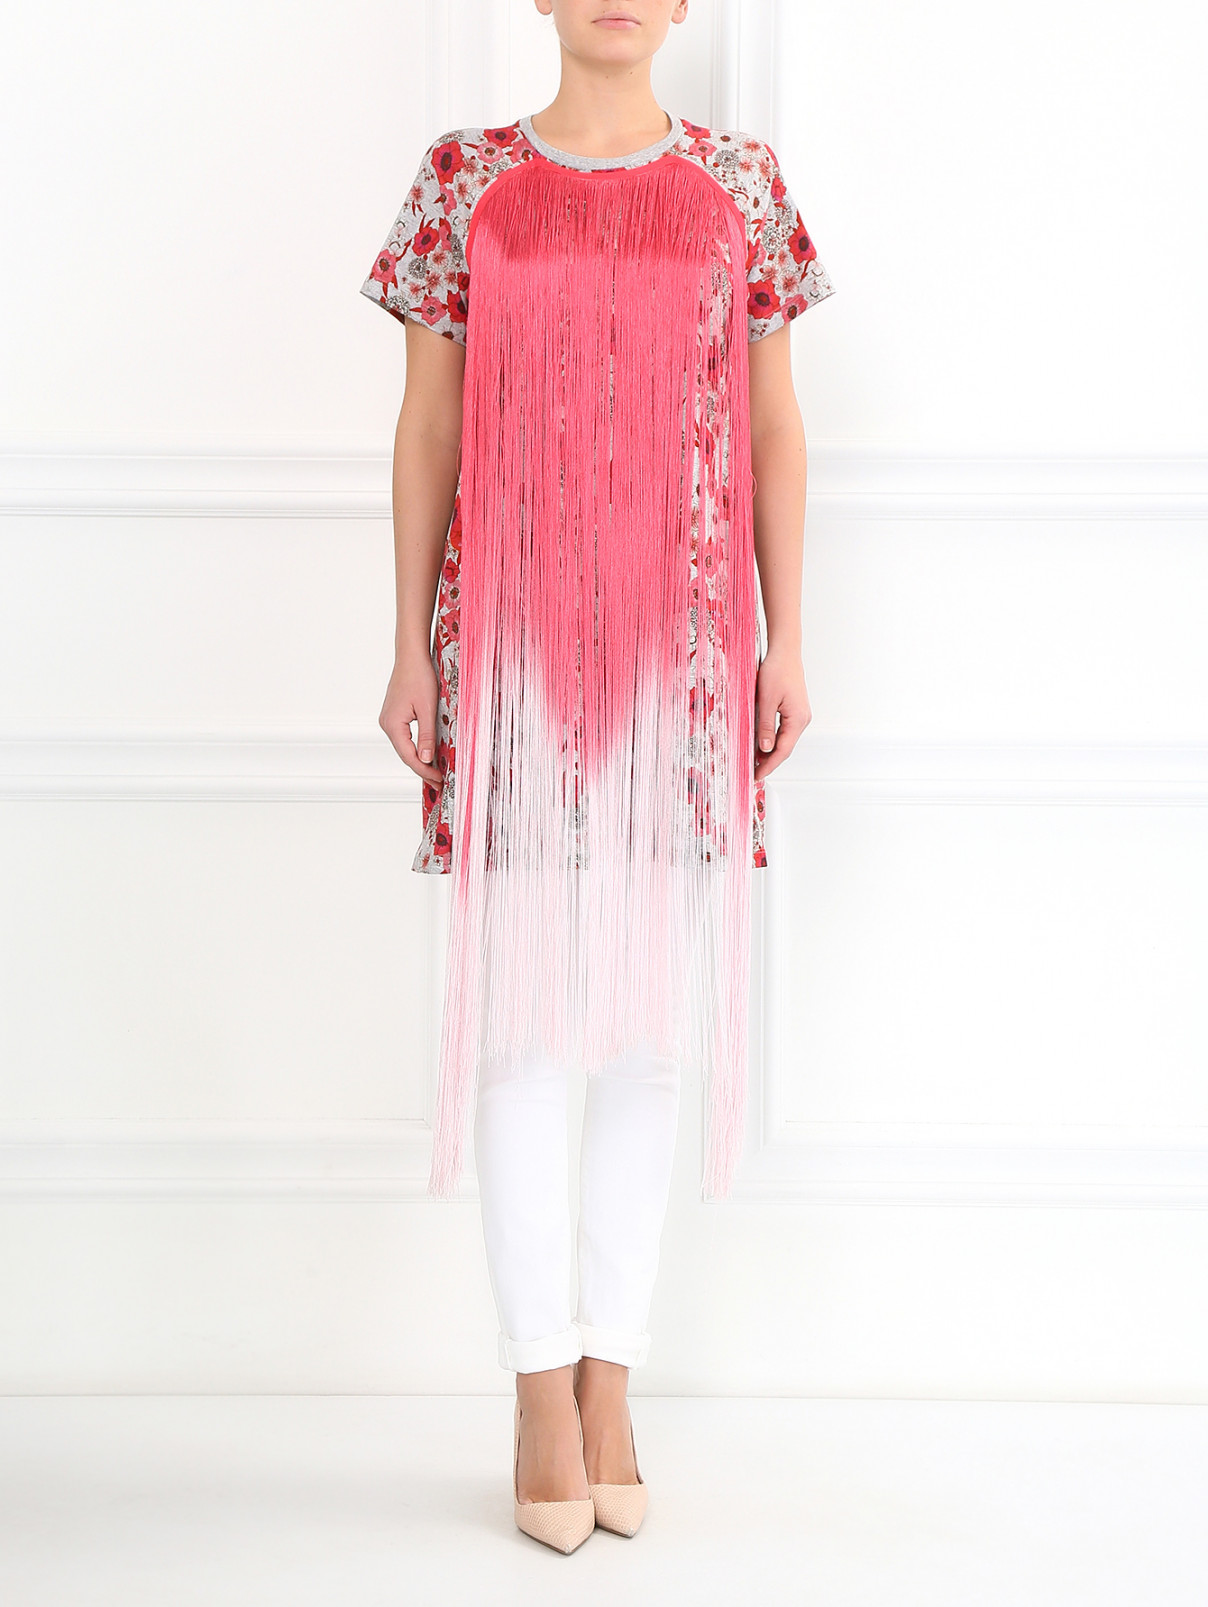 Платье с бахромой из хлопка с цветочным принтом Giamba  –  Модель Общий вид  – Цвет:  Узор